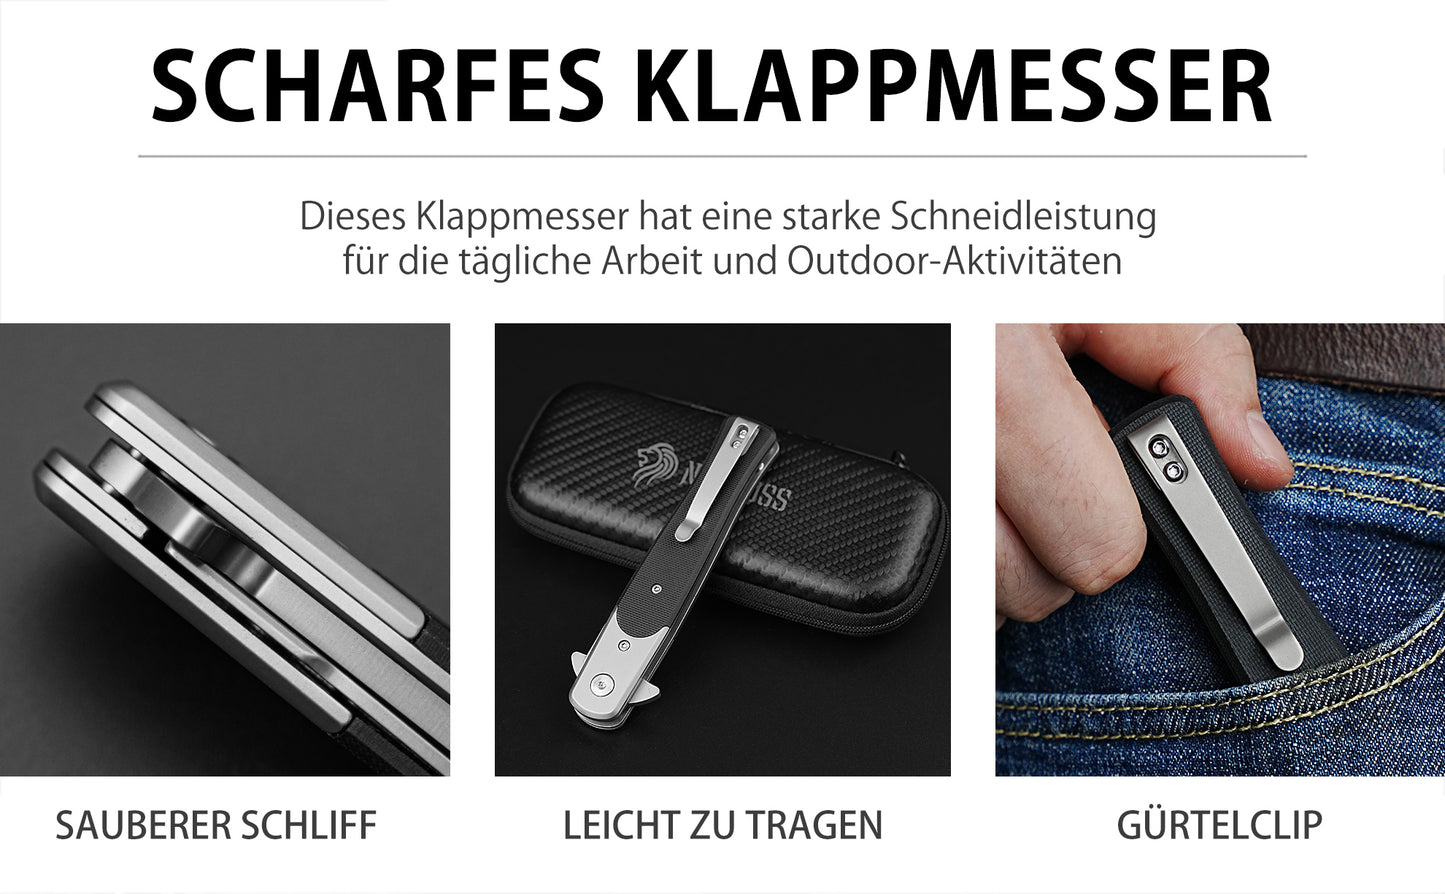 Nedfoss MERMAID Taschenmesser, 9.8cm D2 Stahl Klappmesser mit G10-Griff, Einhandmesser mit Gürtelclip, Vatertagsgeschenk